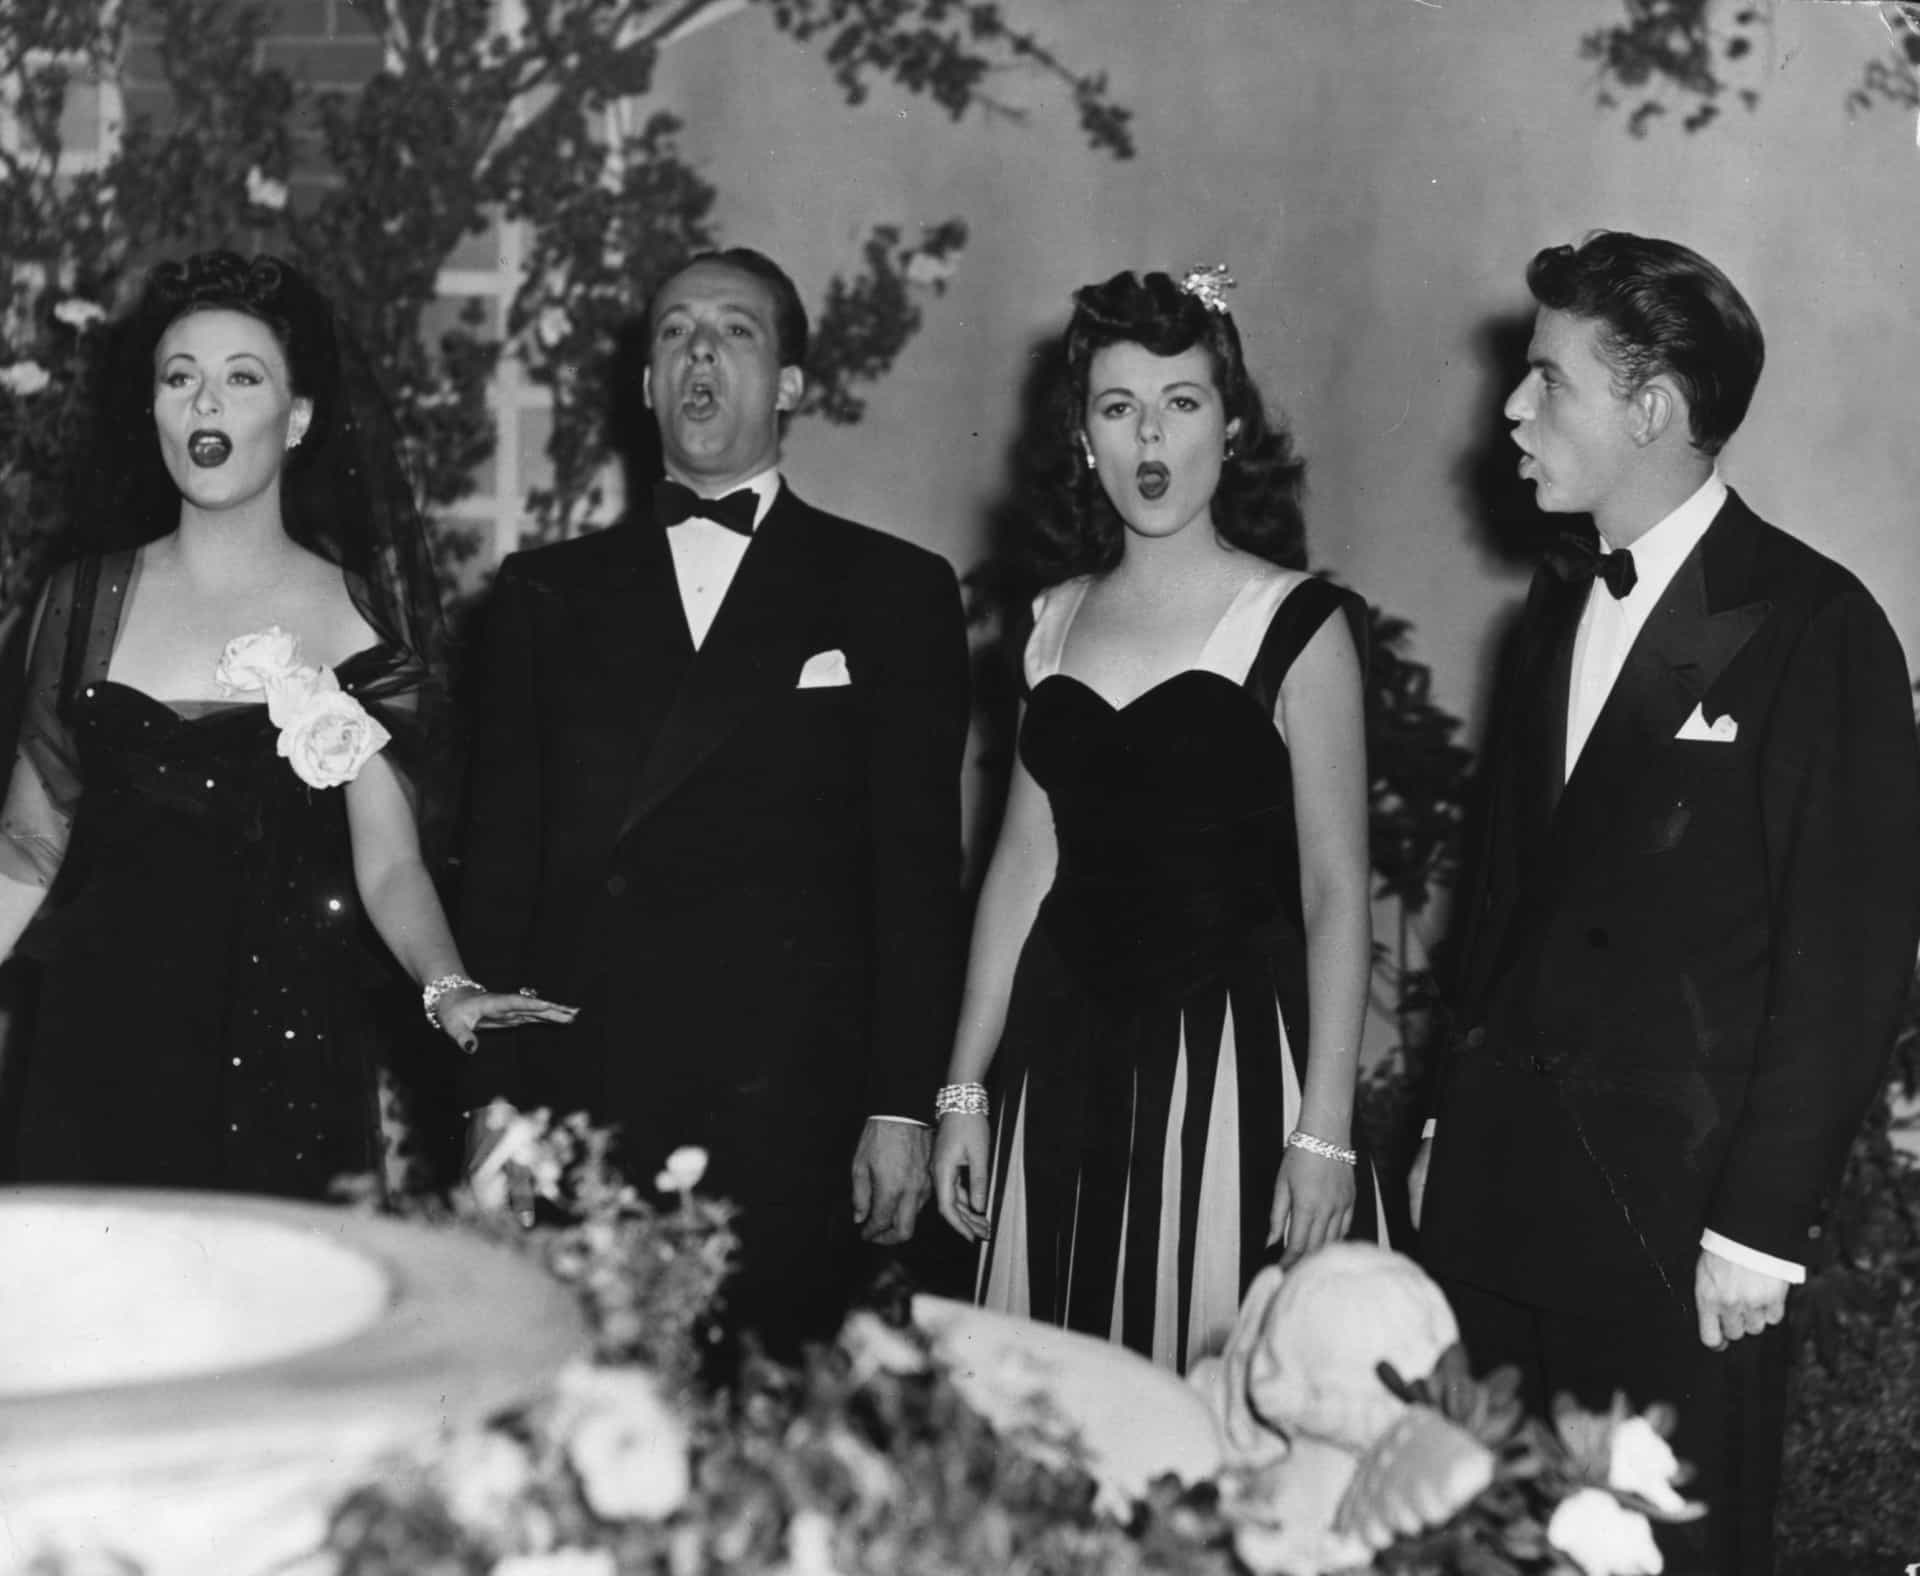 Einen seiner ersten Filmauftritte hatte er in "Higher And Higher" (1943), wo er zusammen mit Michele Morgan, Victor Borge und Barbara Hale singt.